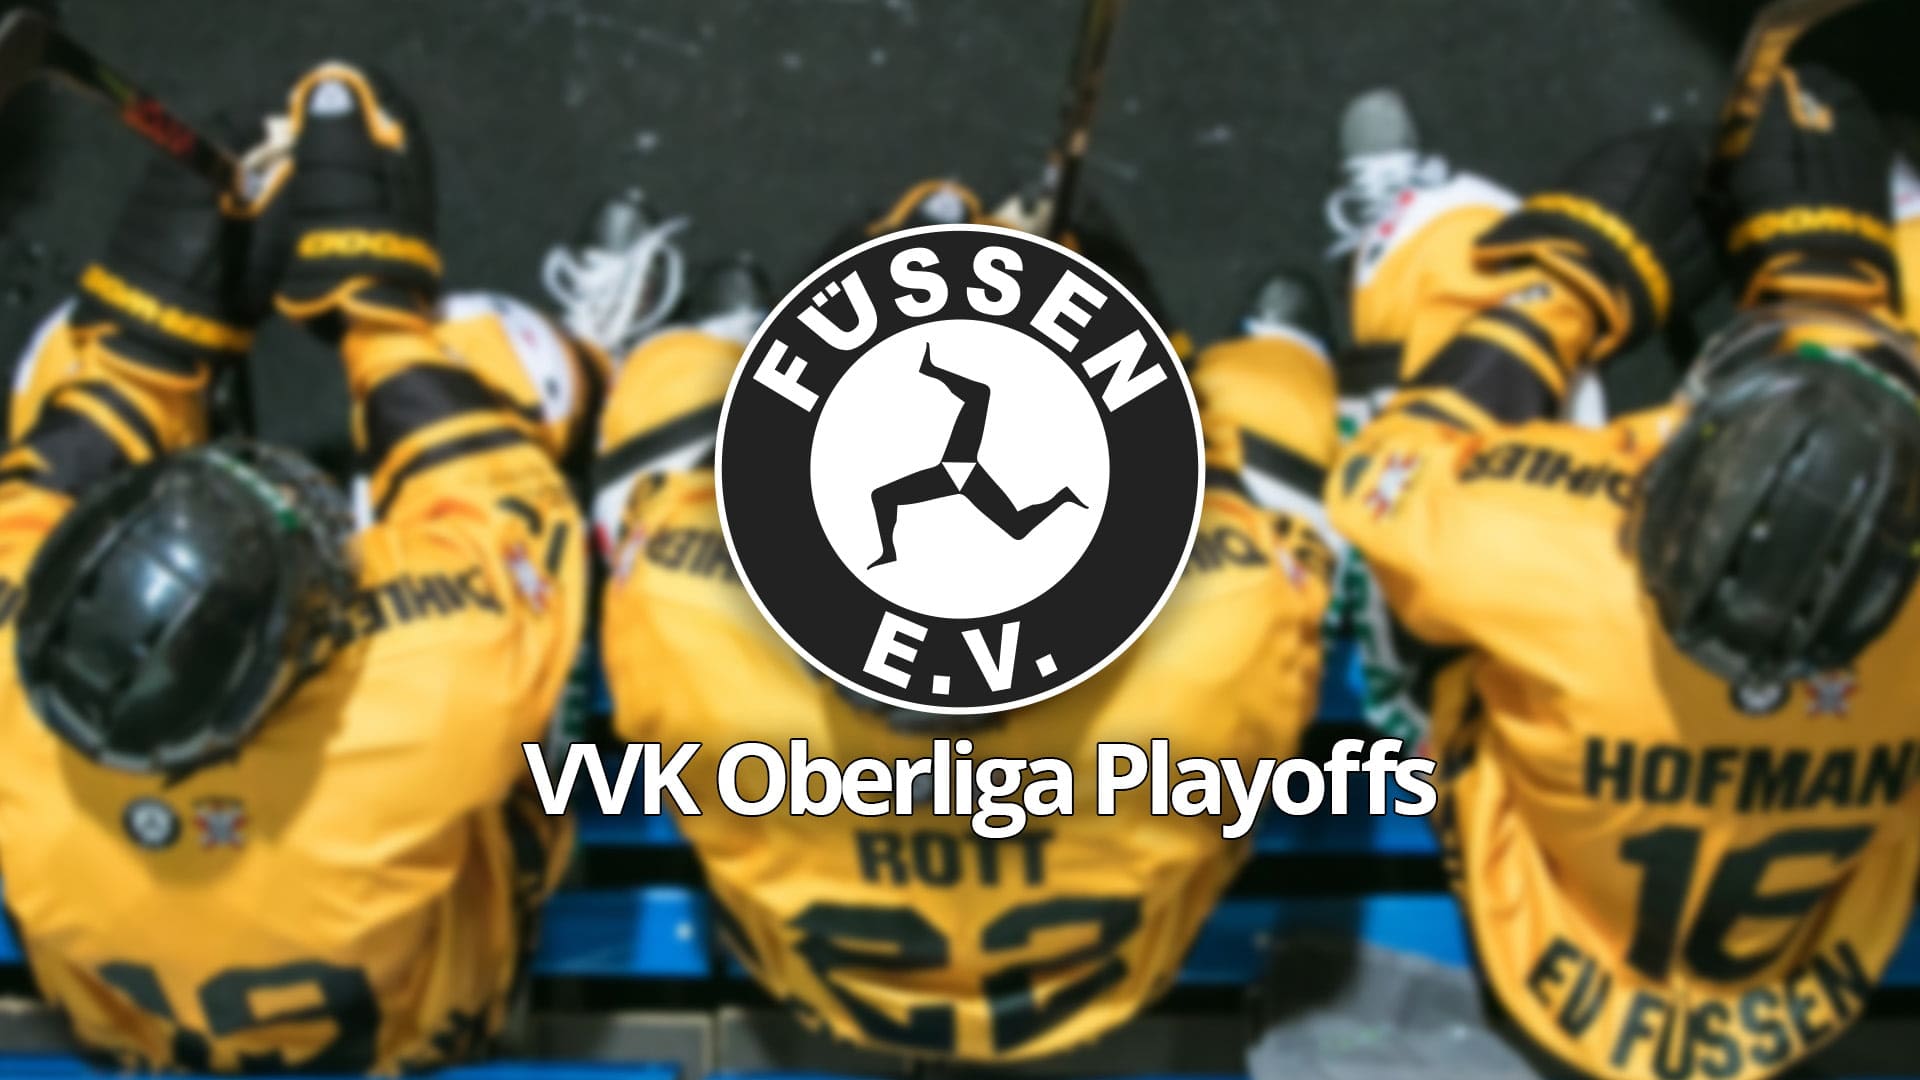 VVK Oberliga Playoffs